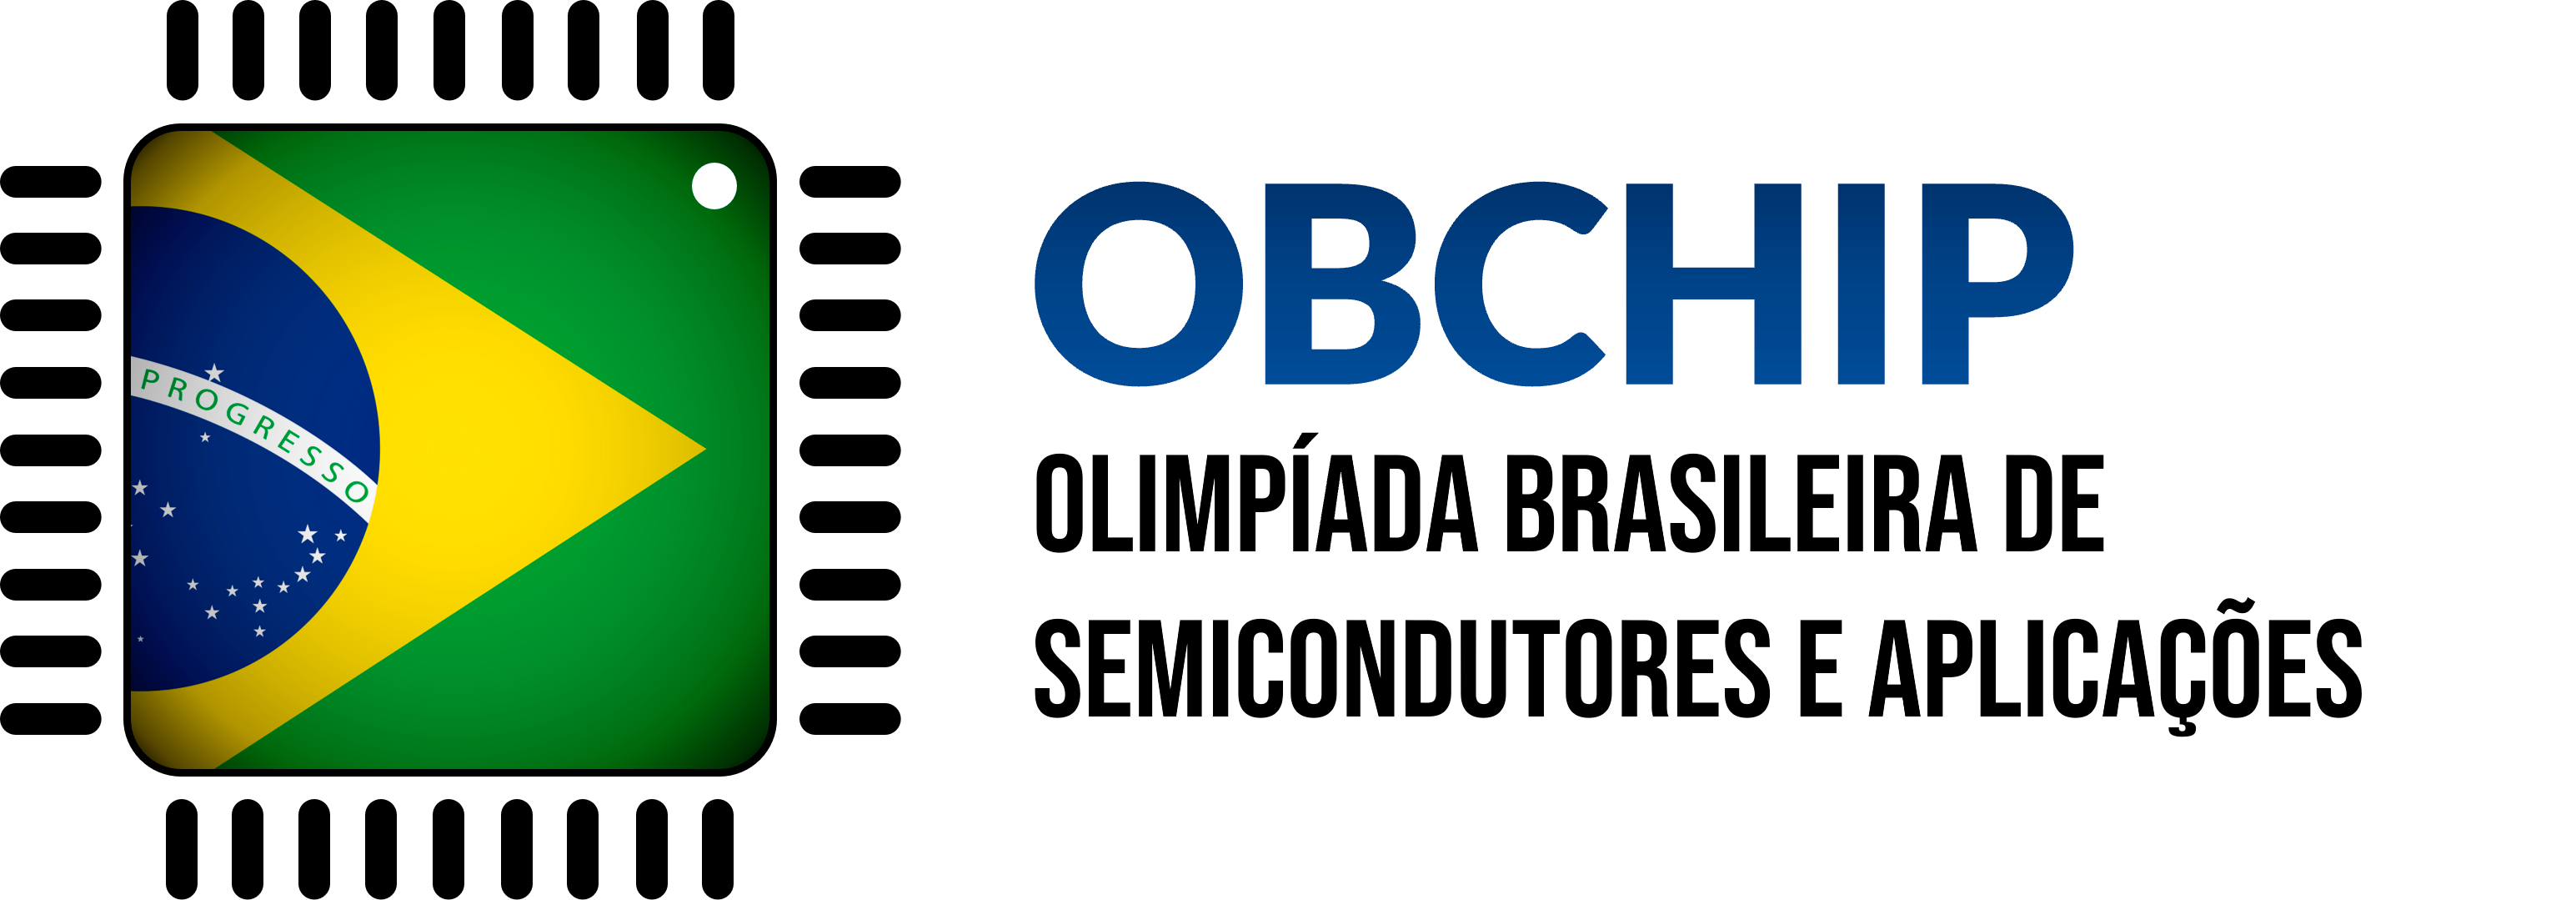 OBCHIP – Olimpíada Brasileira de Semicondutores e Aplicações